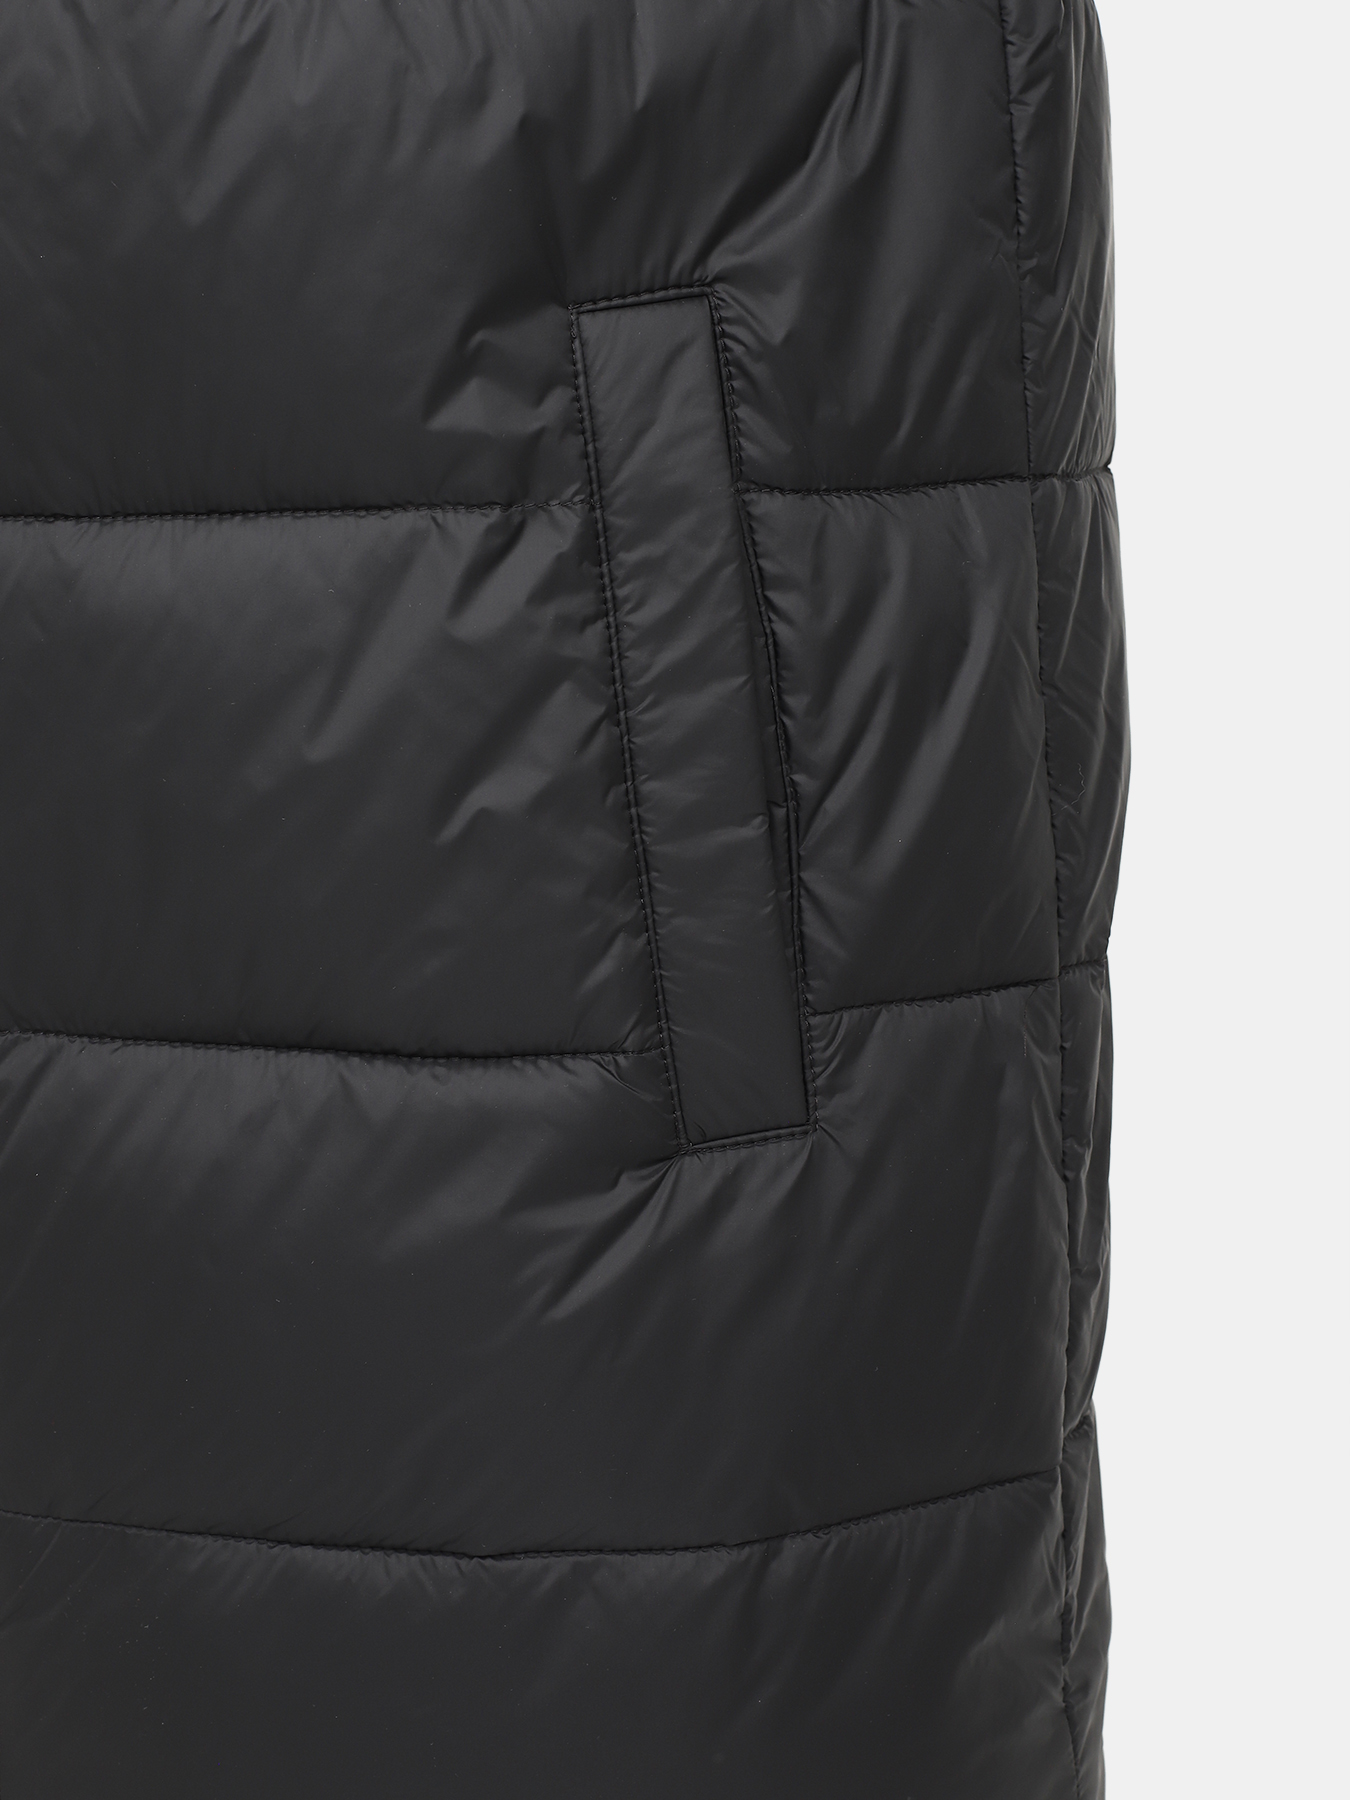 Удлиненная куртка Mati HUGO 426043-046, цвет черный, размер 54-56 - фото 2